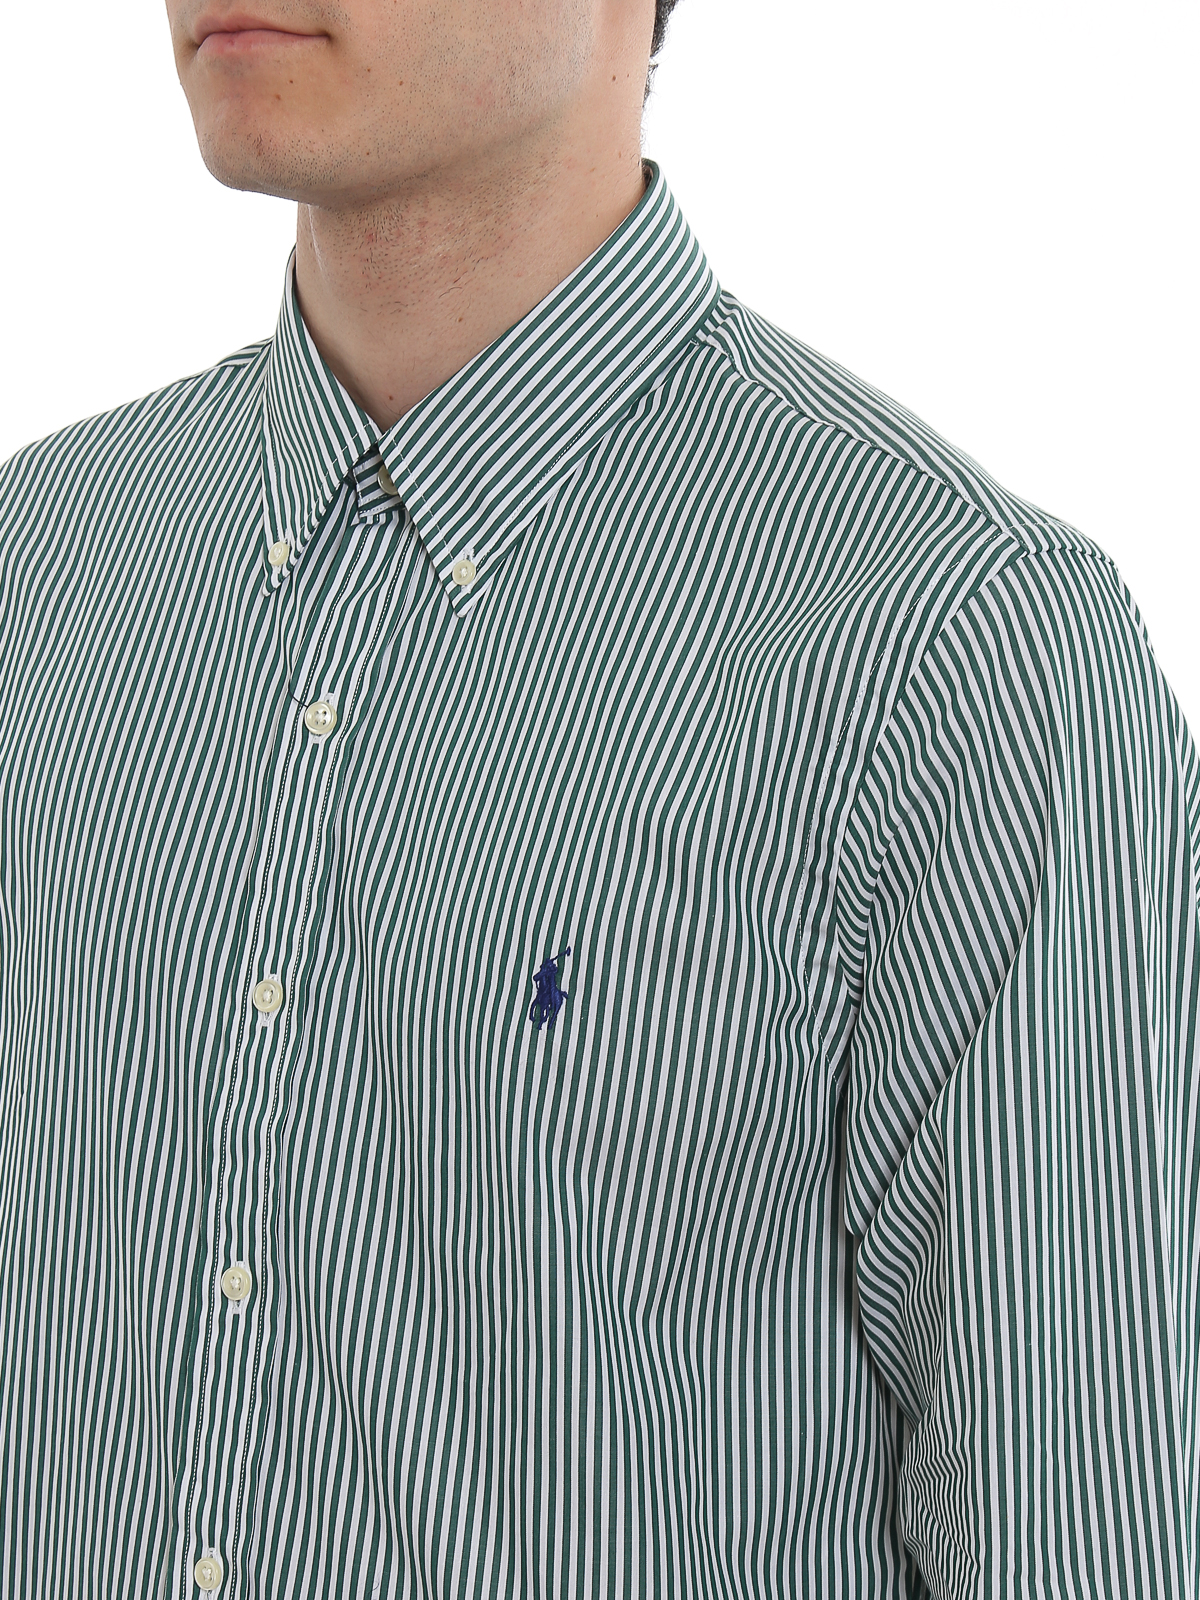 vitaliteit behang Aarzelen Shirts Polo Ralph Lauren - Striped button-down stretch cotton shirt -  710767330014